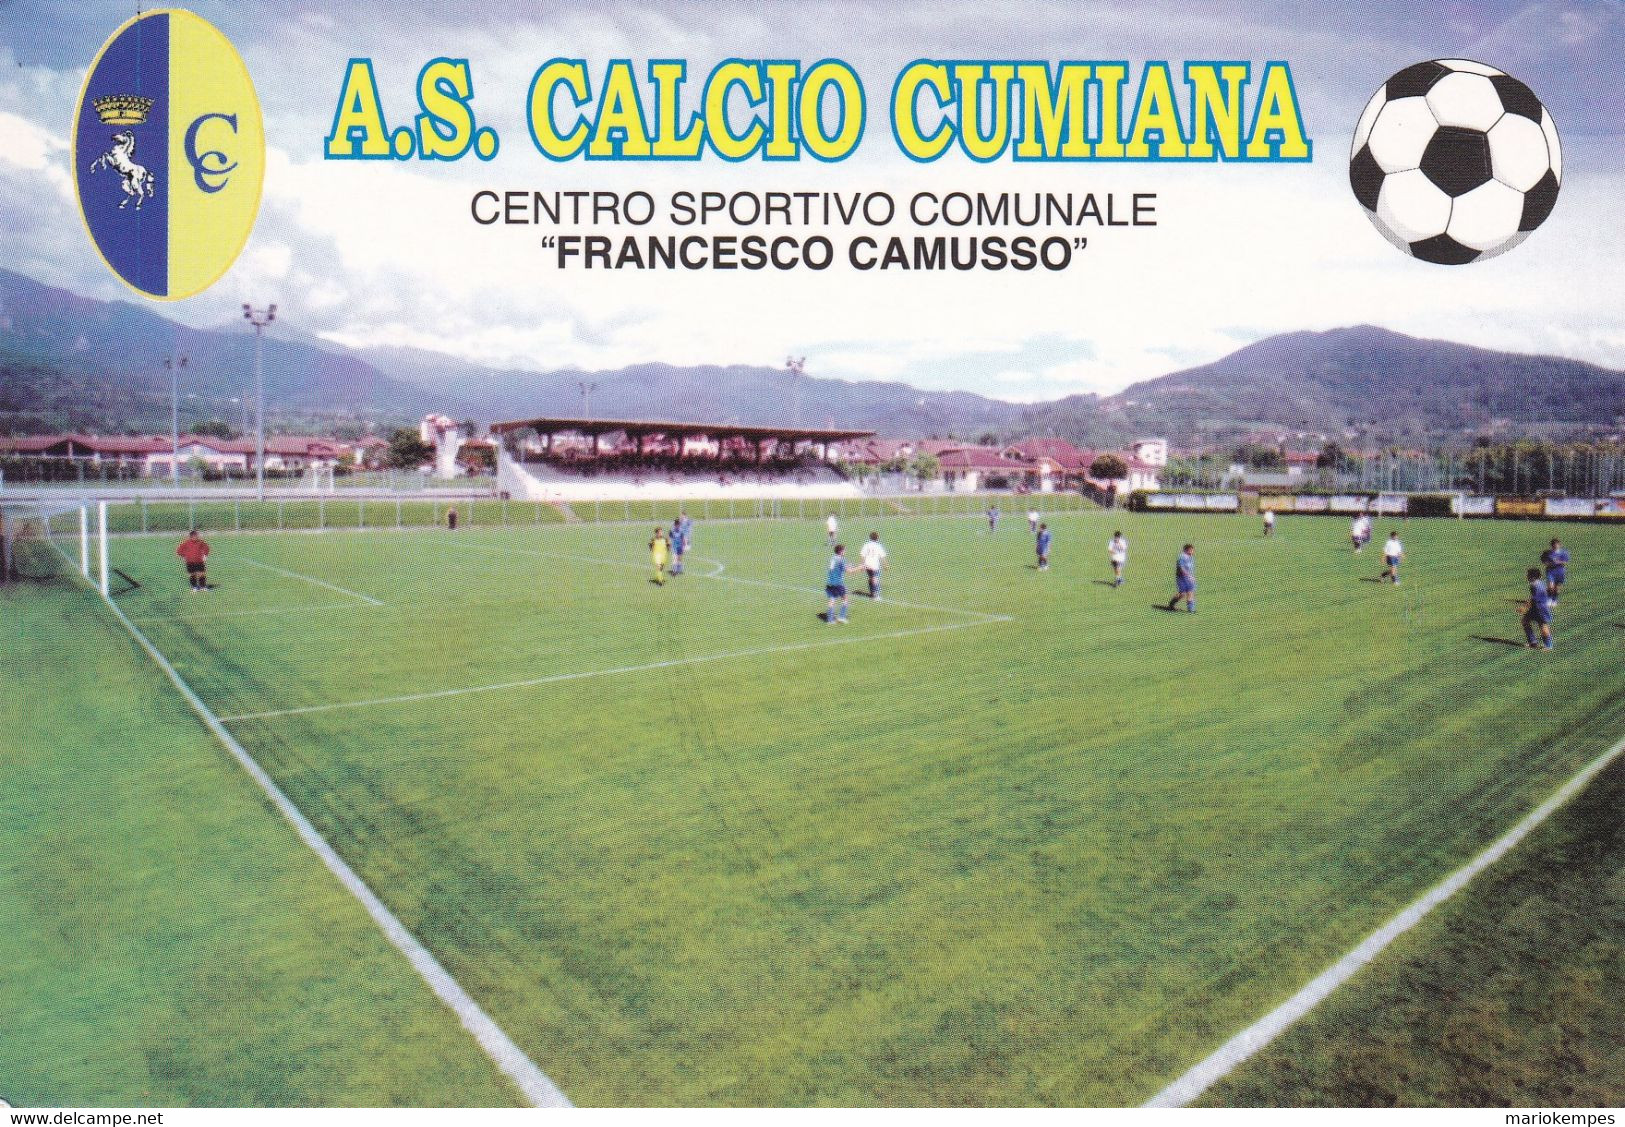 CUMIANA ( TO )_A.S. CALCIO CUMIANA_STADIO COMUNALE "FRANCESCO CAMUSSO"_Stadium_Stade_Estadio_Stadion - Stadia & Sportstructuren